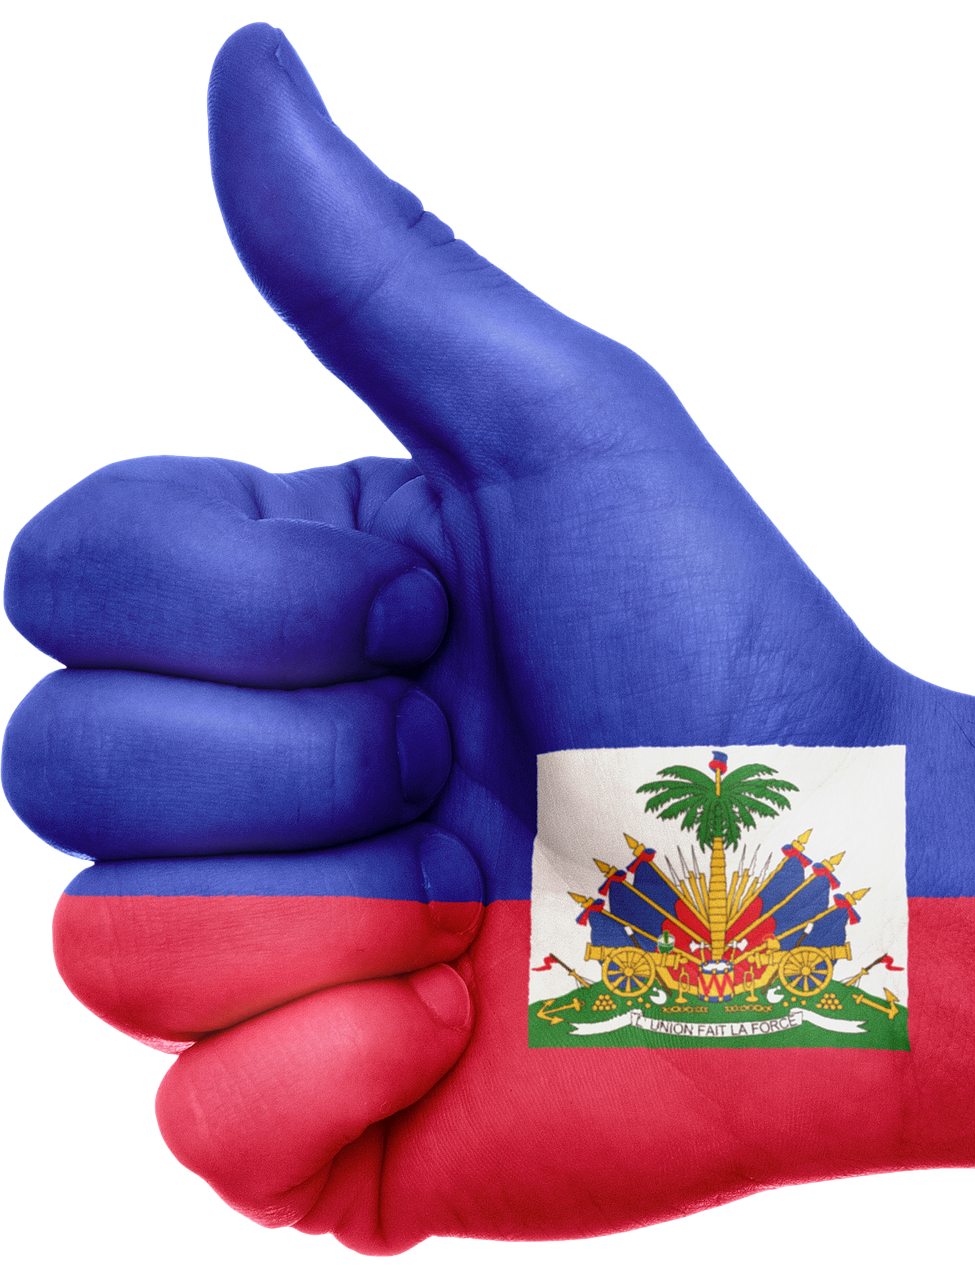 haiti flag hand free photo